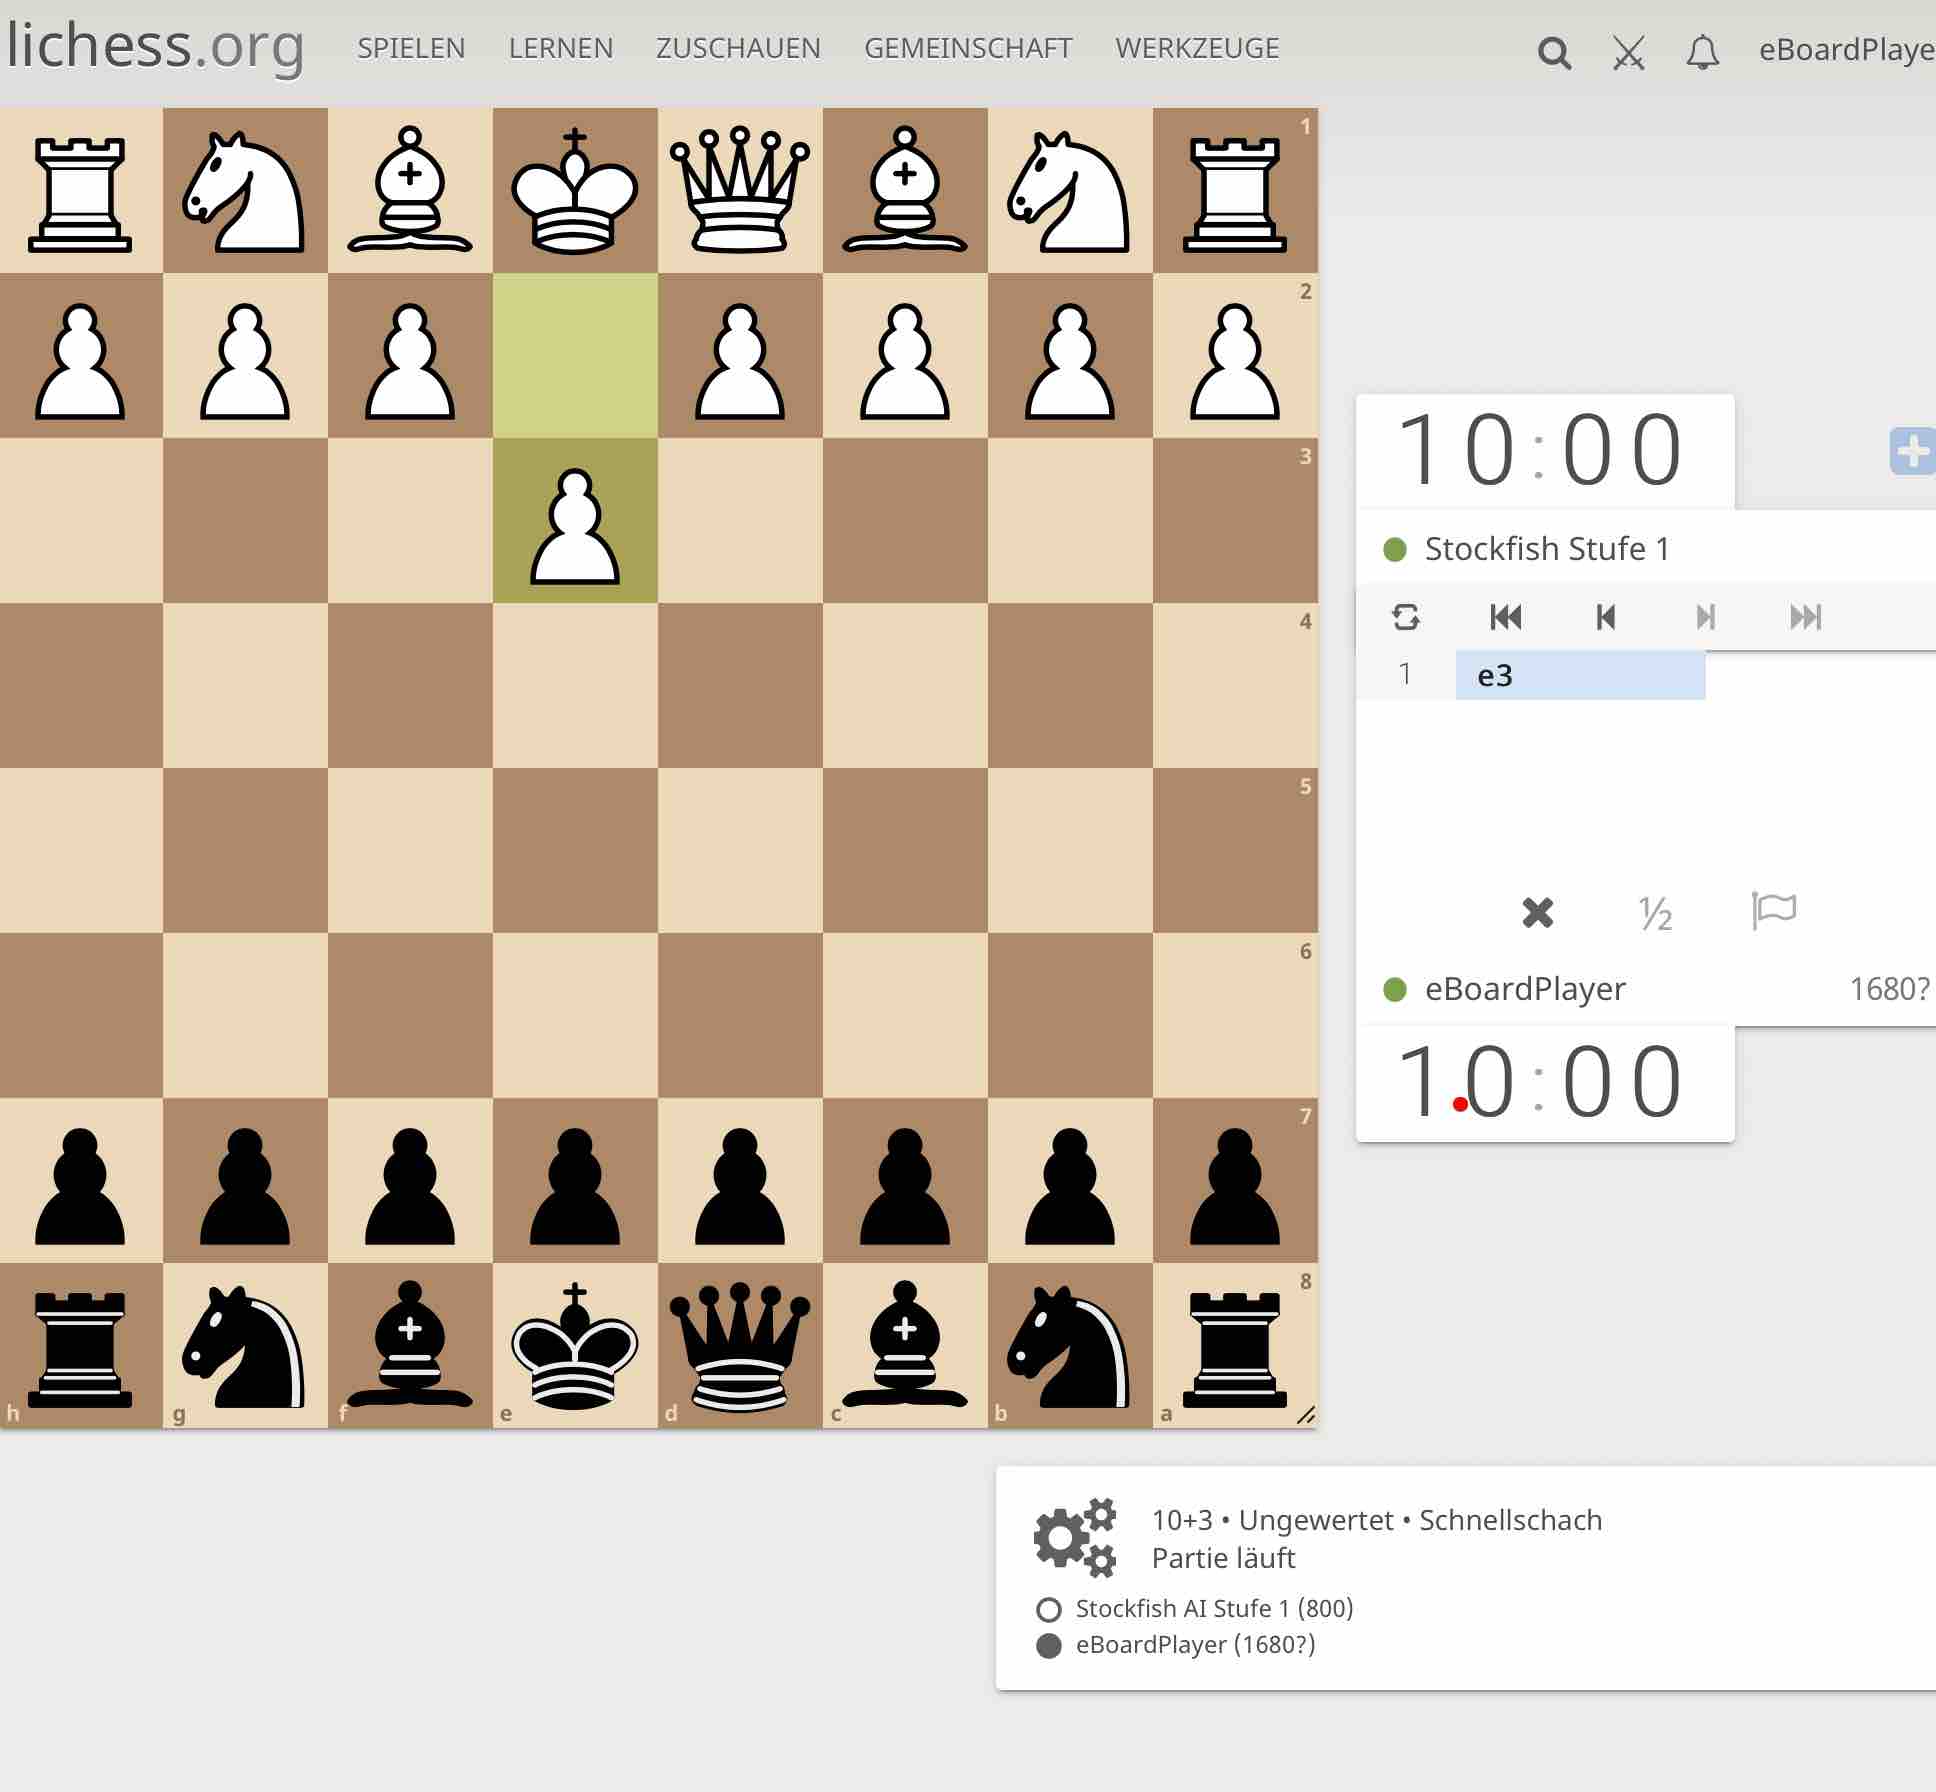 GitHub - vladmandic/chess: Chess Engine Battles & Analysis using UCI Engines